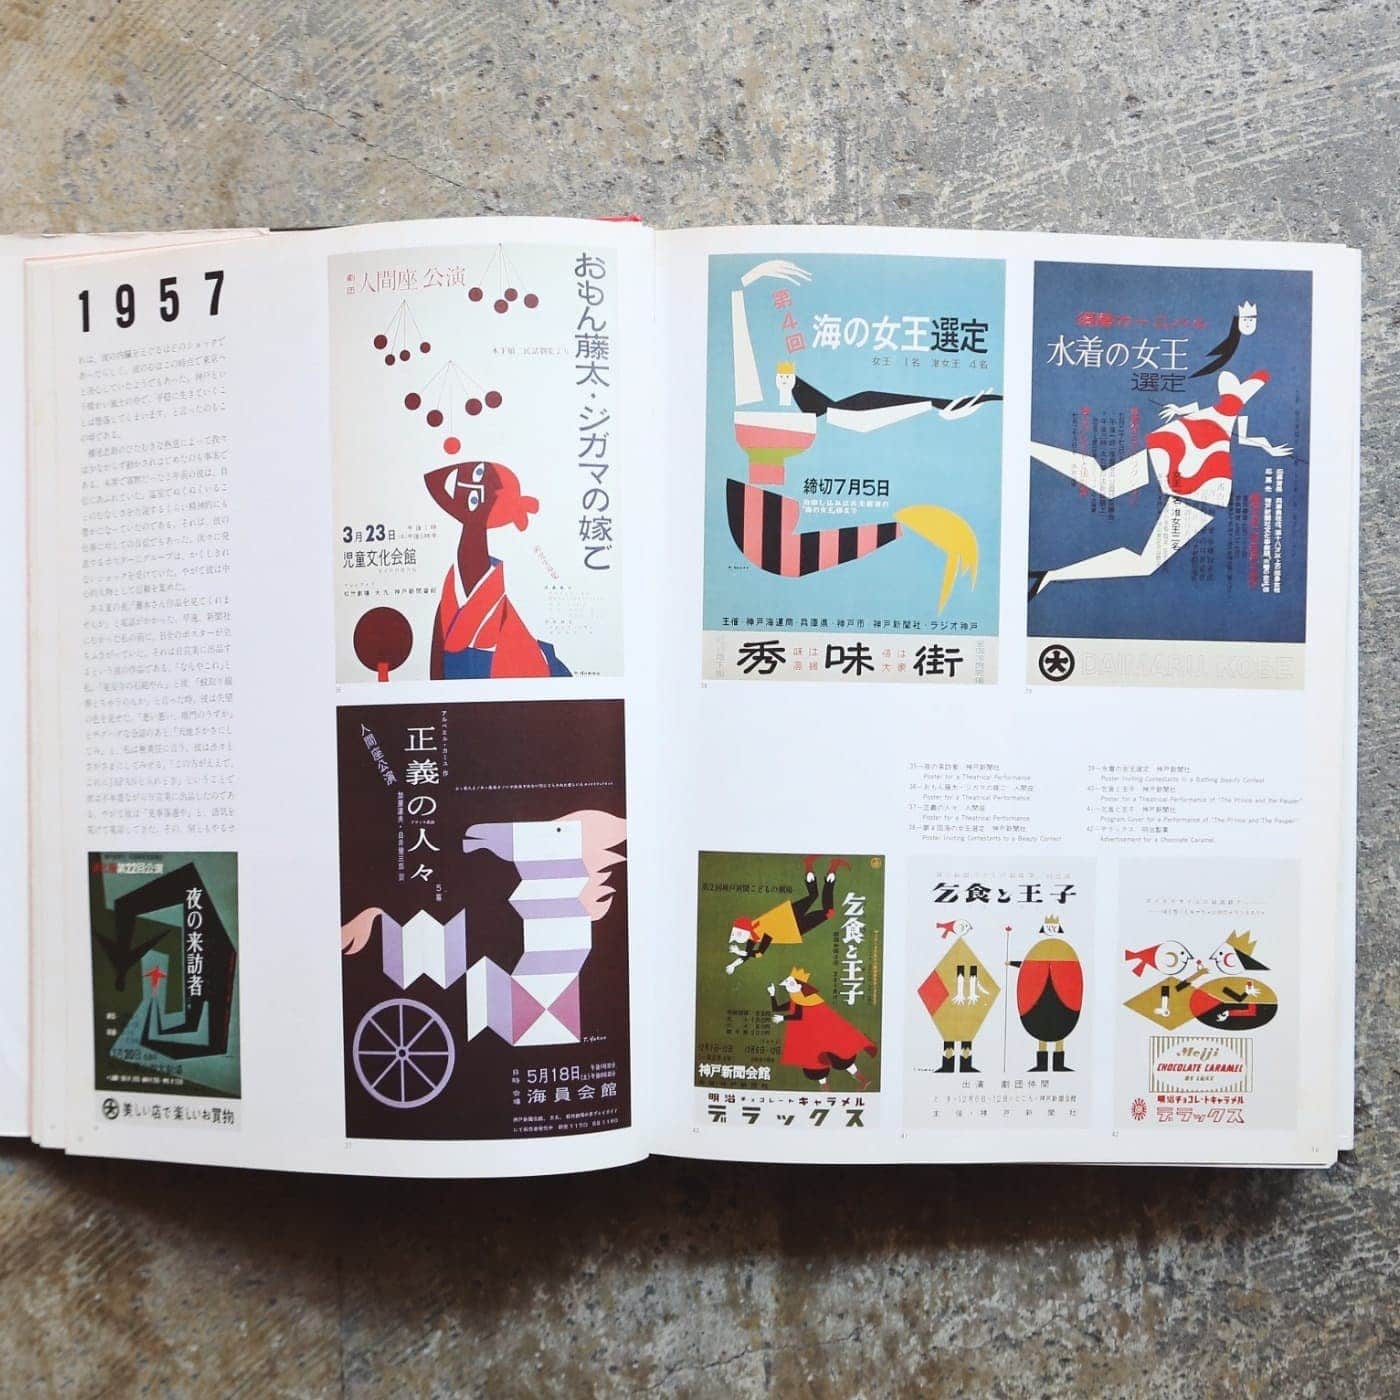 ジャンルの垣根を飛び越えた、横尾忠則のデザイン | nostos books